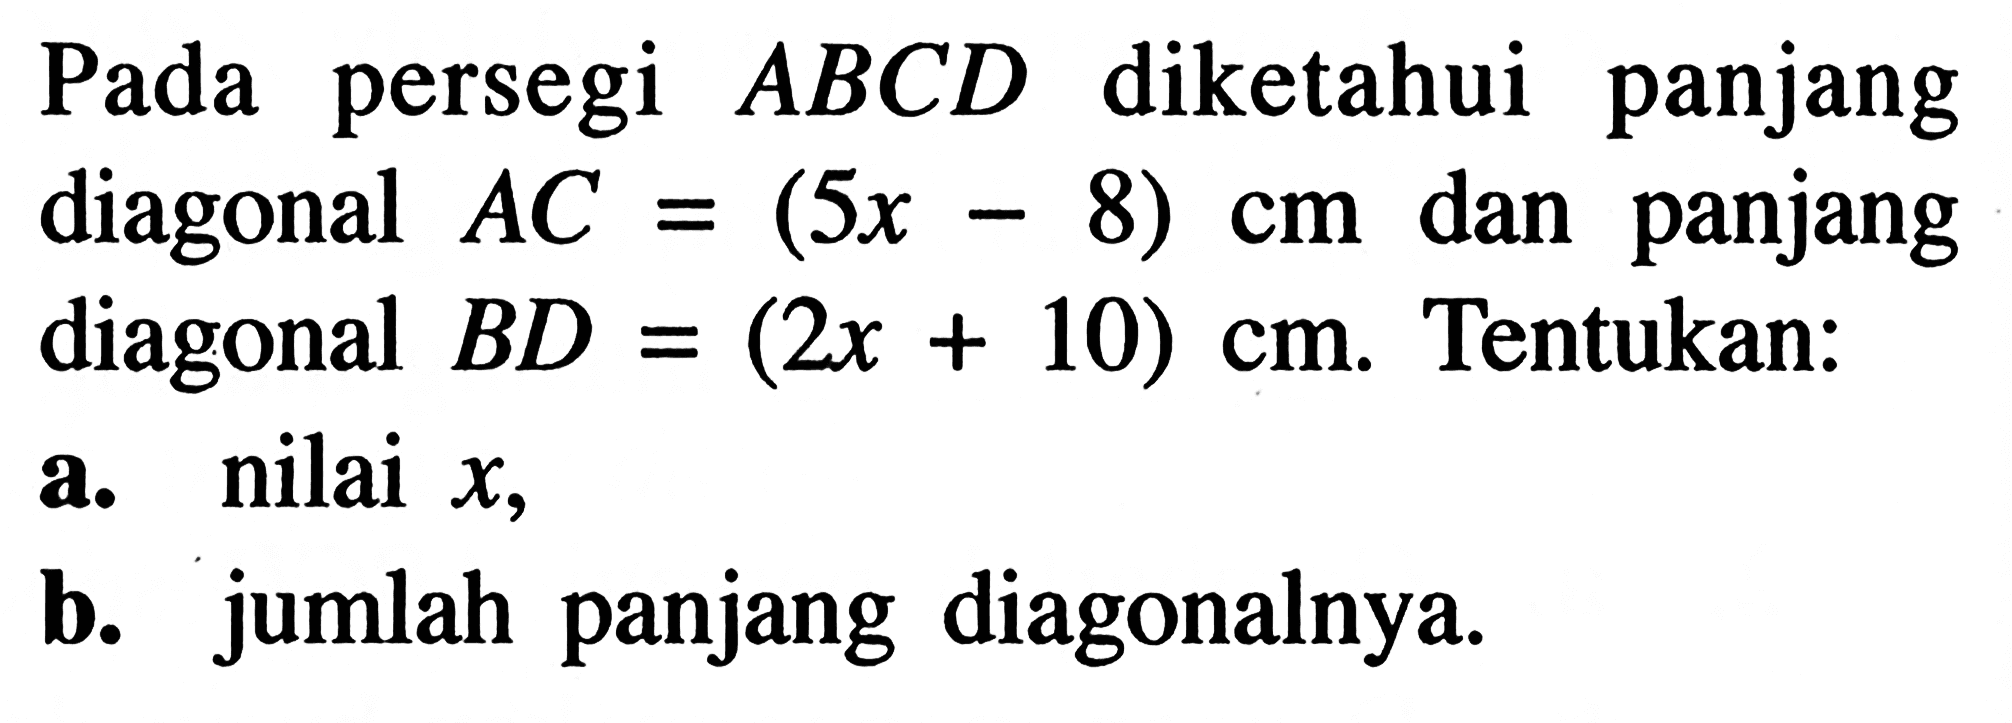 Pada persegi  ABCD diketahui panjang diagonal  AC=(5x-8) cm  dan panjang diagonal  BD=(2x+10) cm. Tentukan:a. nilai  x ,b. jumlah panjang diagonalnya.